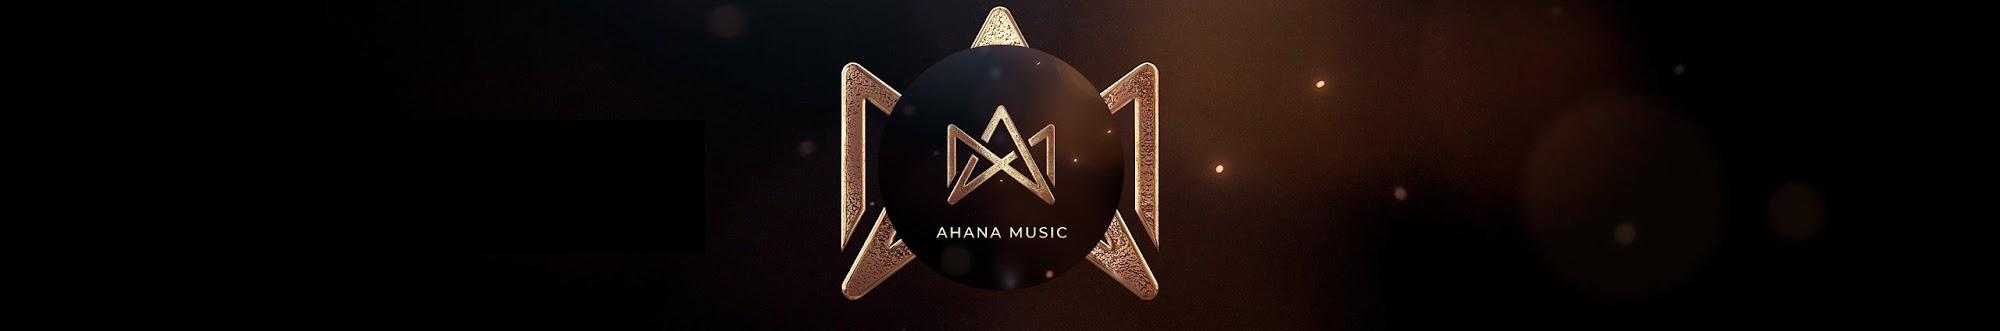 Ahana Music